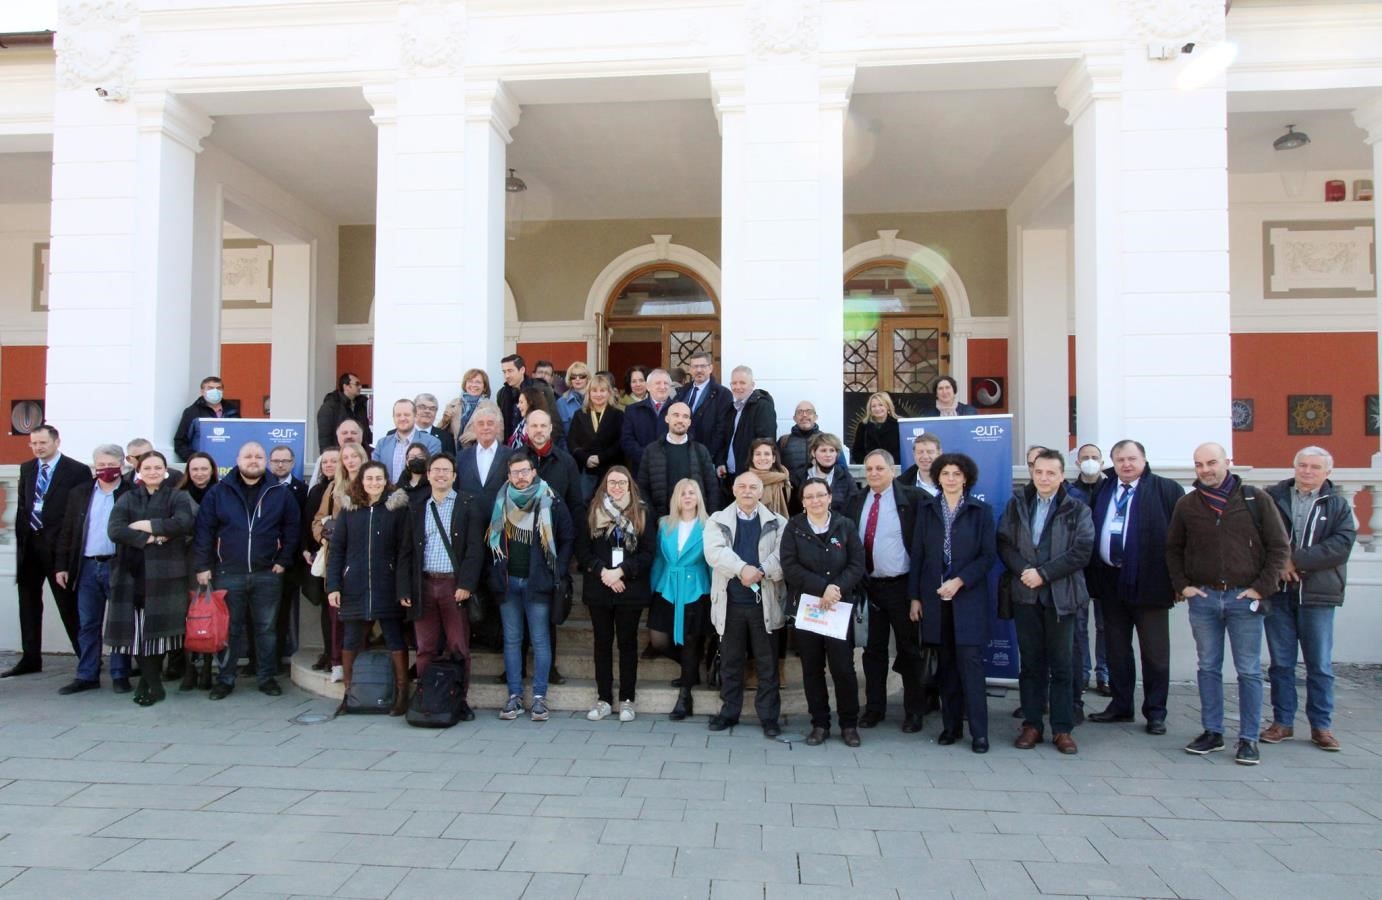 Consorțiul European University of Technology EUt+, din care face parte și UTCN, reunit la Cluj-Napoca